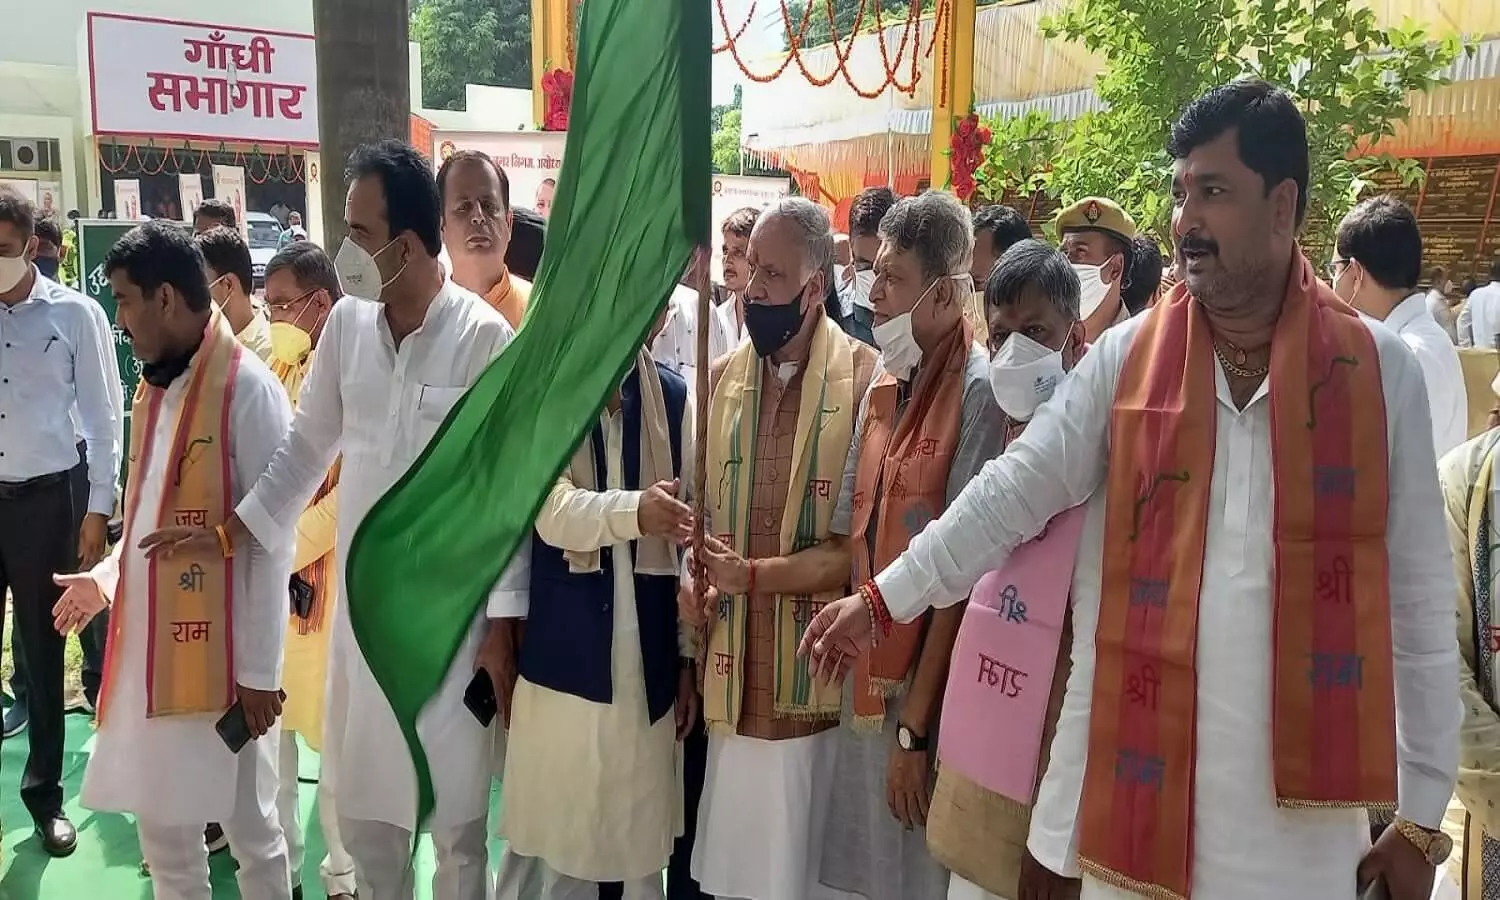 Ayodhya News: मंत्री अशुतोष टंडन ने अयोध्या के विकास के लिए किया करोड़ों की परियोजनाओं का लोकार्पण और शिलान्यास